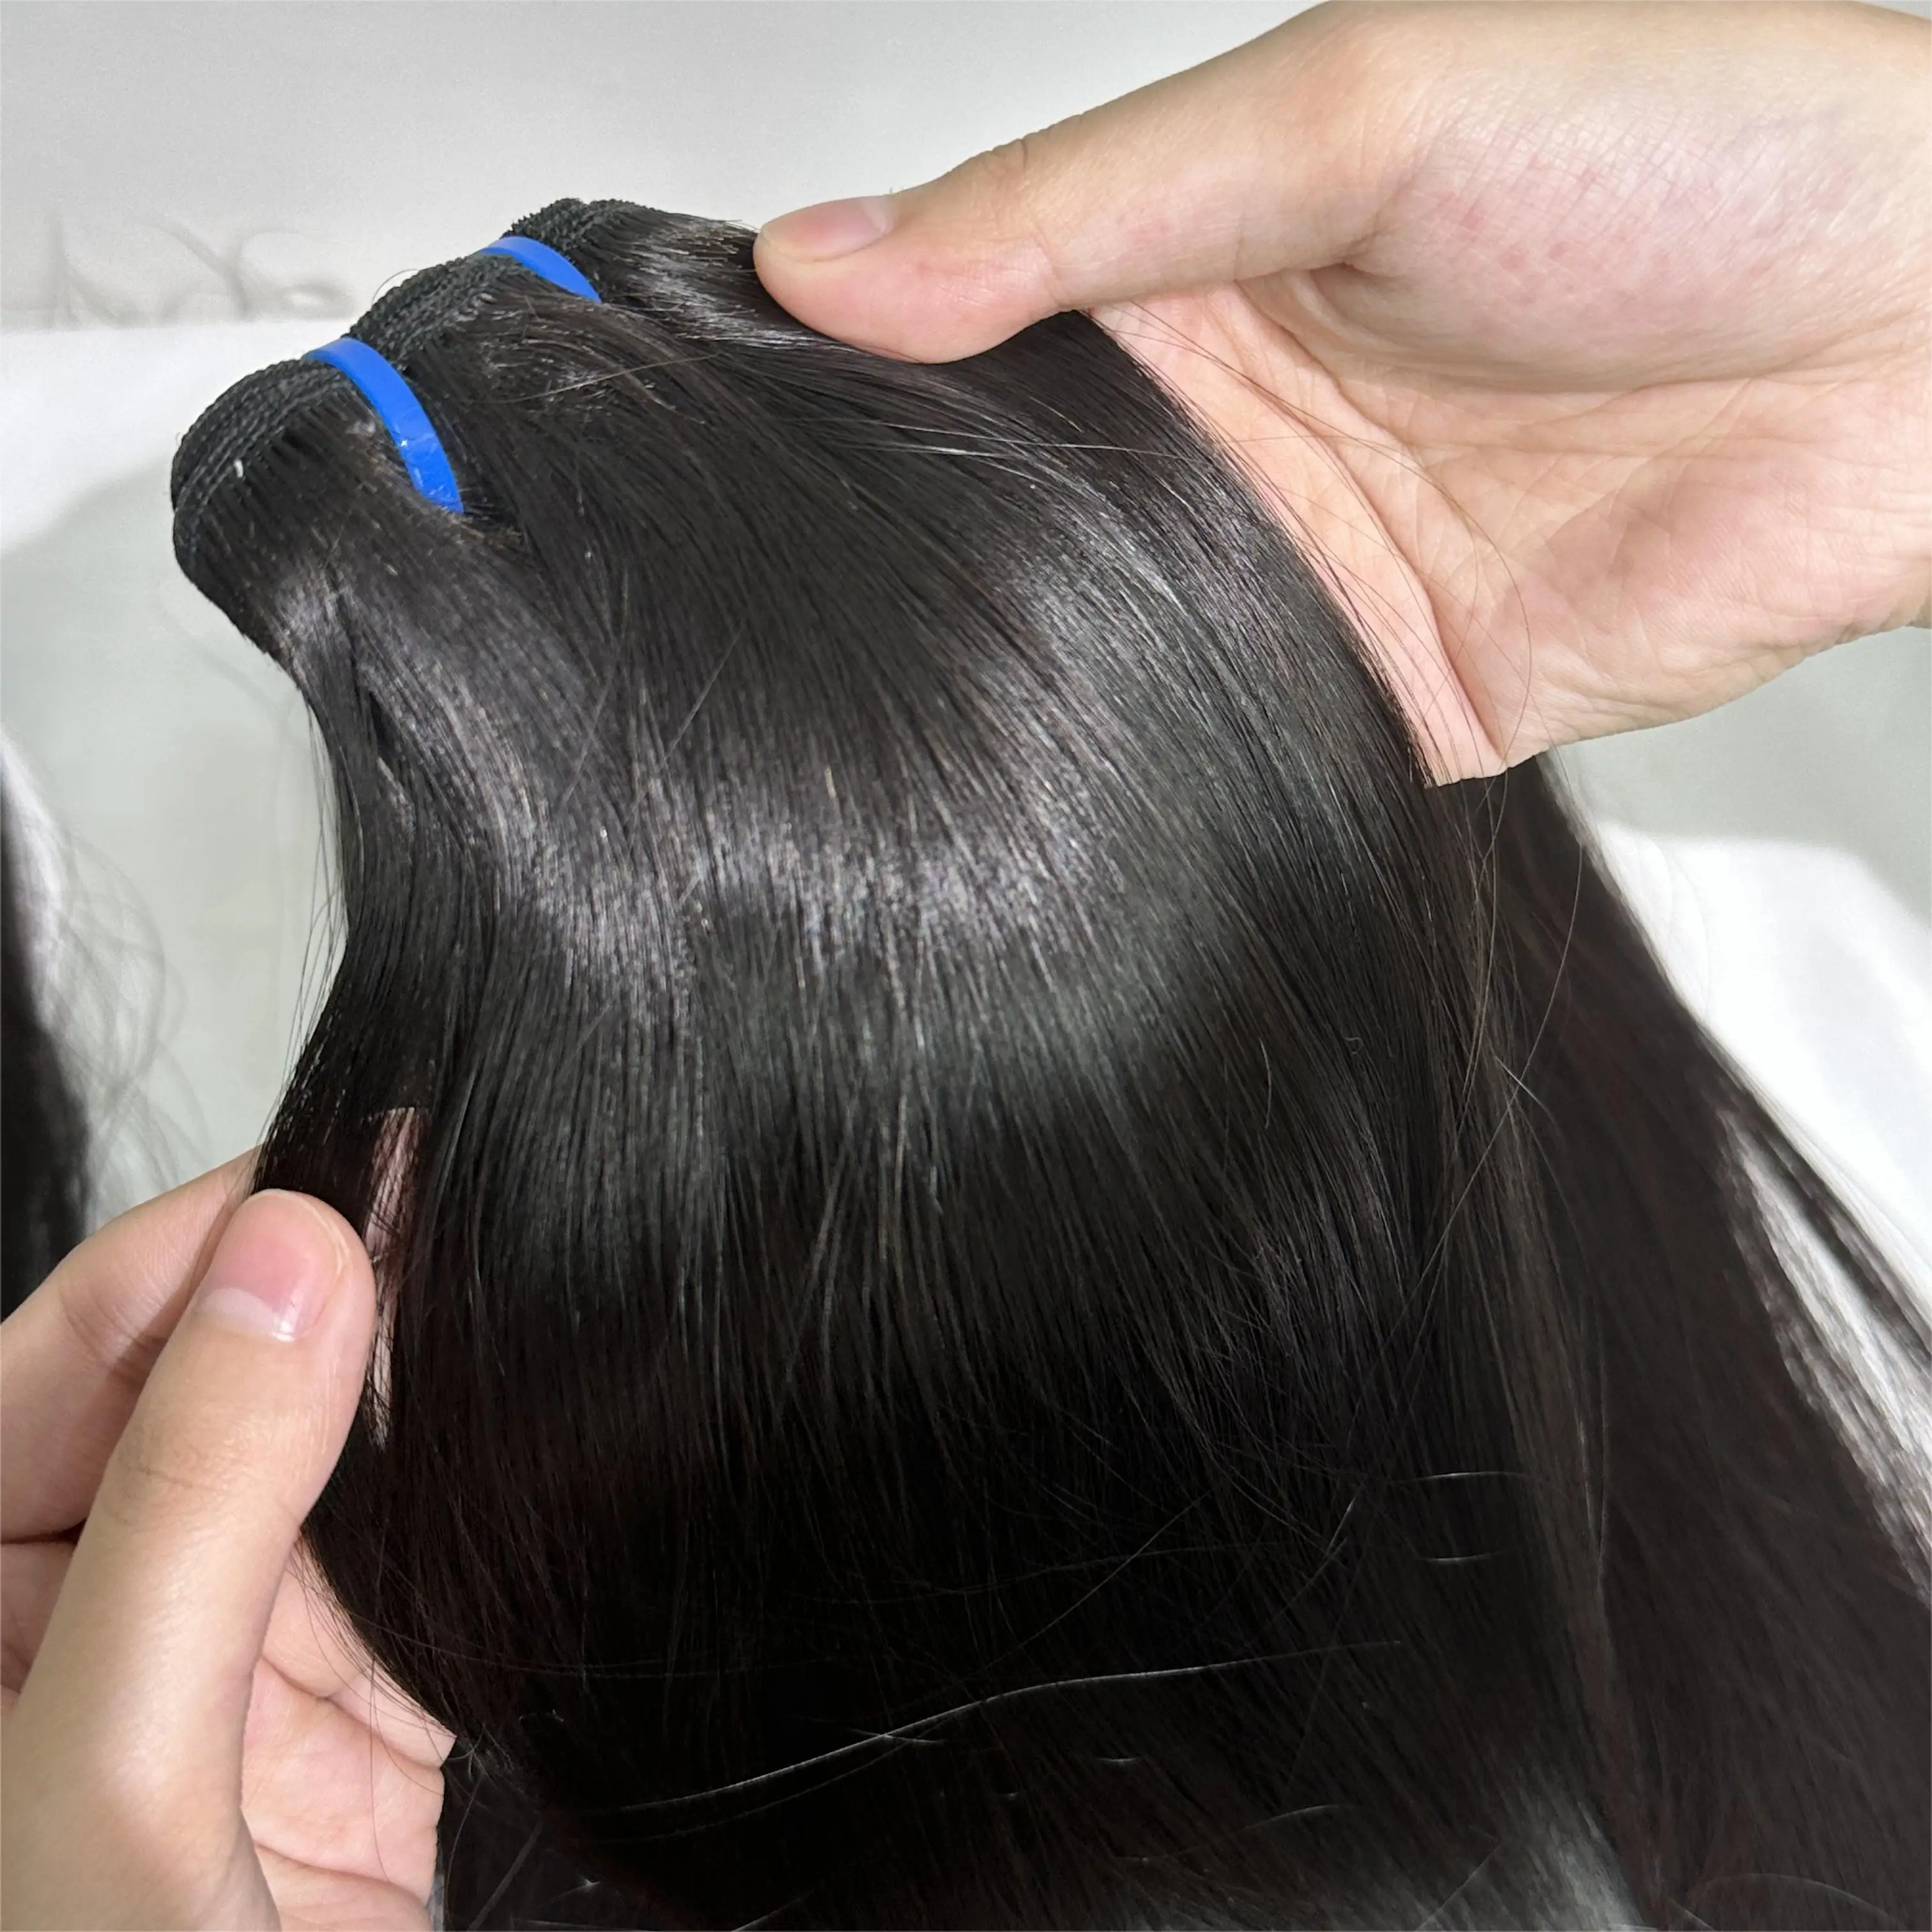 Commercio all'ingrosso, pacchetto di capelli brasiliani, doppio disegnato a buon mercato di estensione dei capelli umani, tessuto grezzo dei fasci di capelli allineati alla cuticola vergine